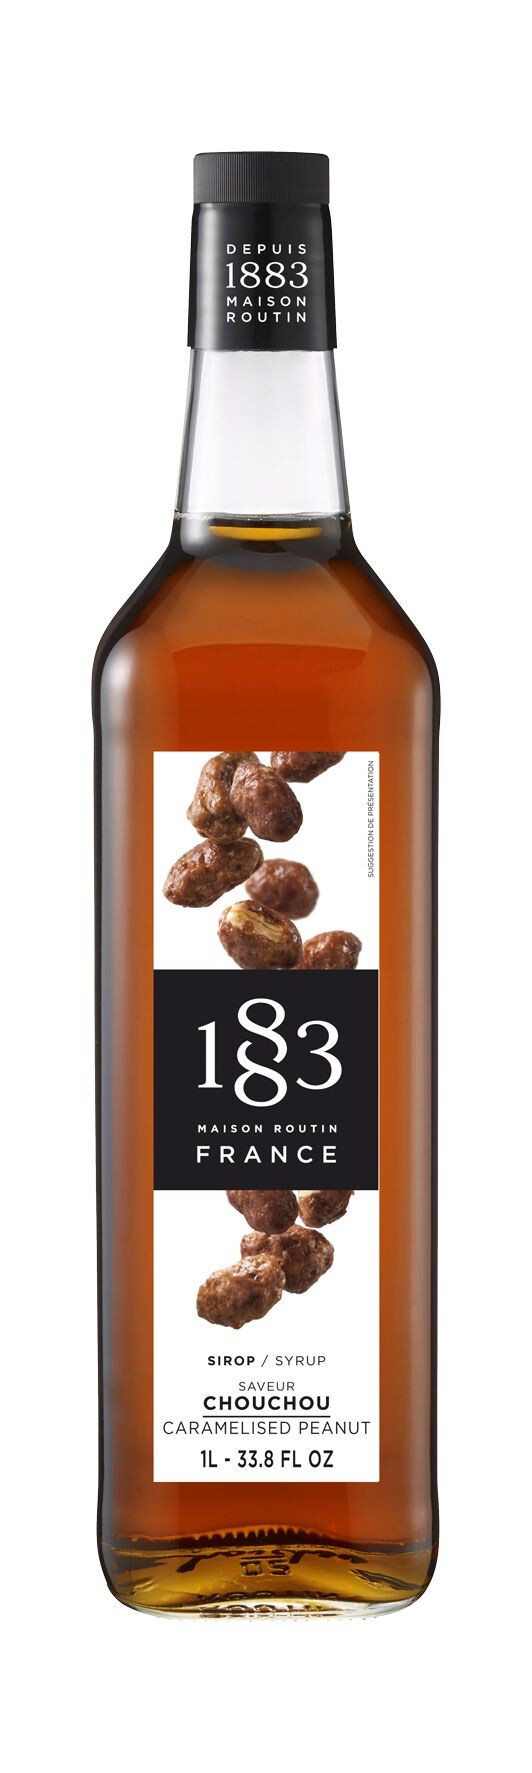 Routin 1883 Caramelised Peanut syrup 1L 0%